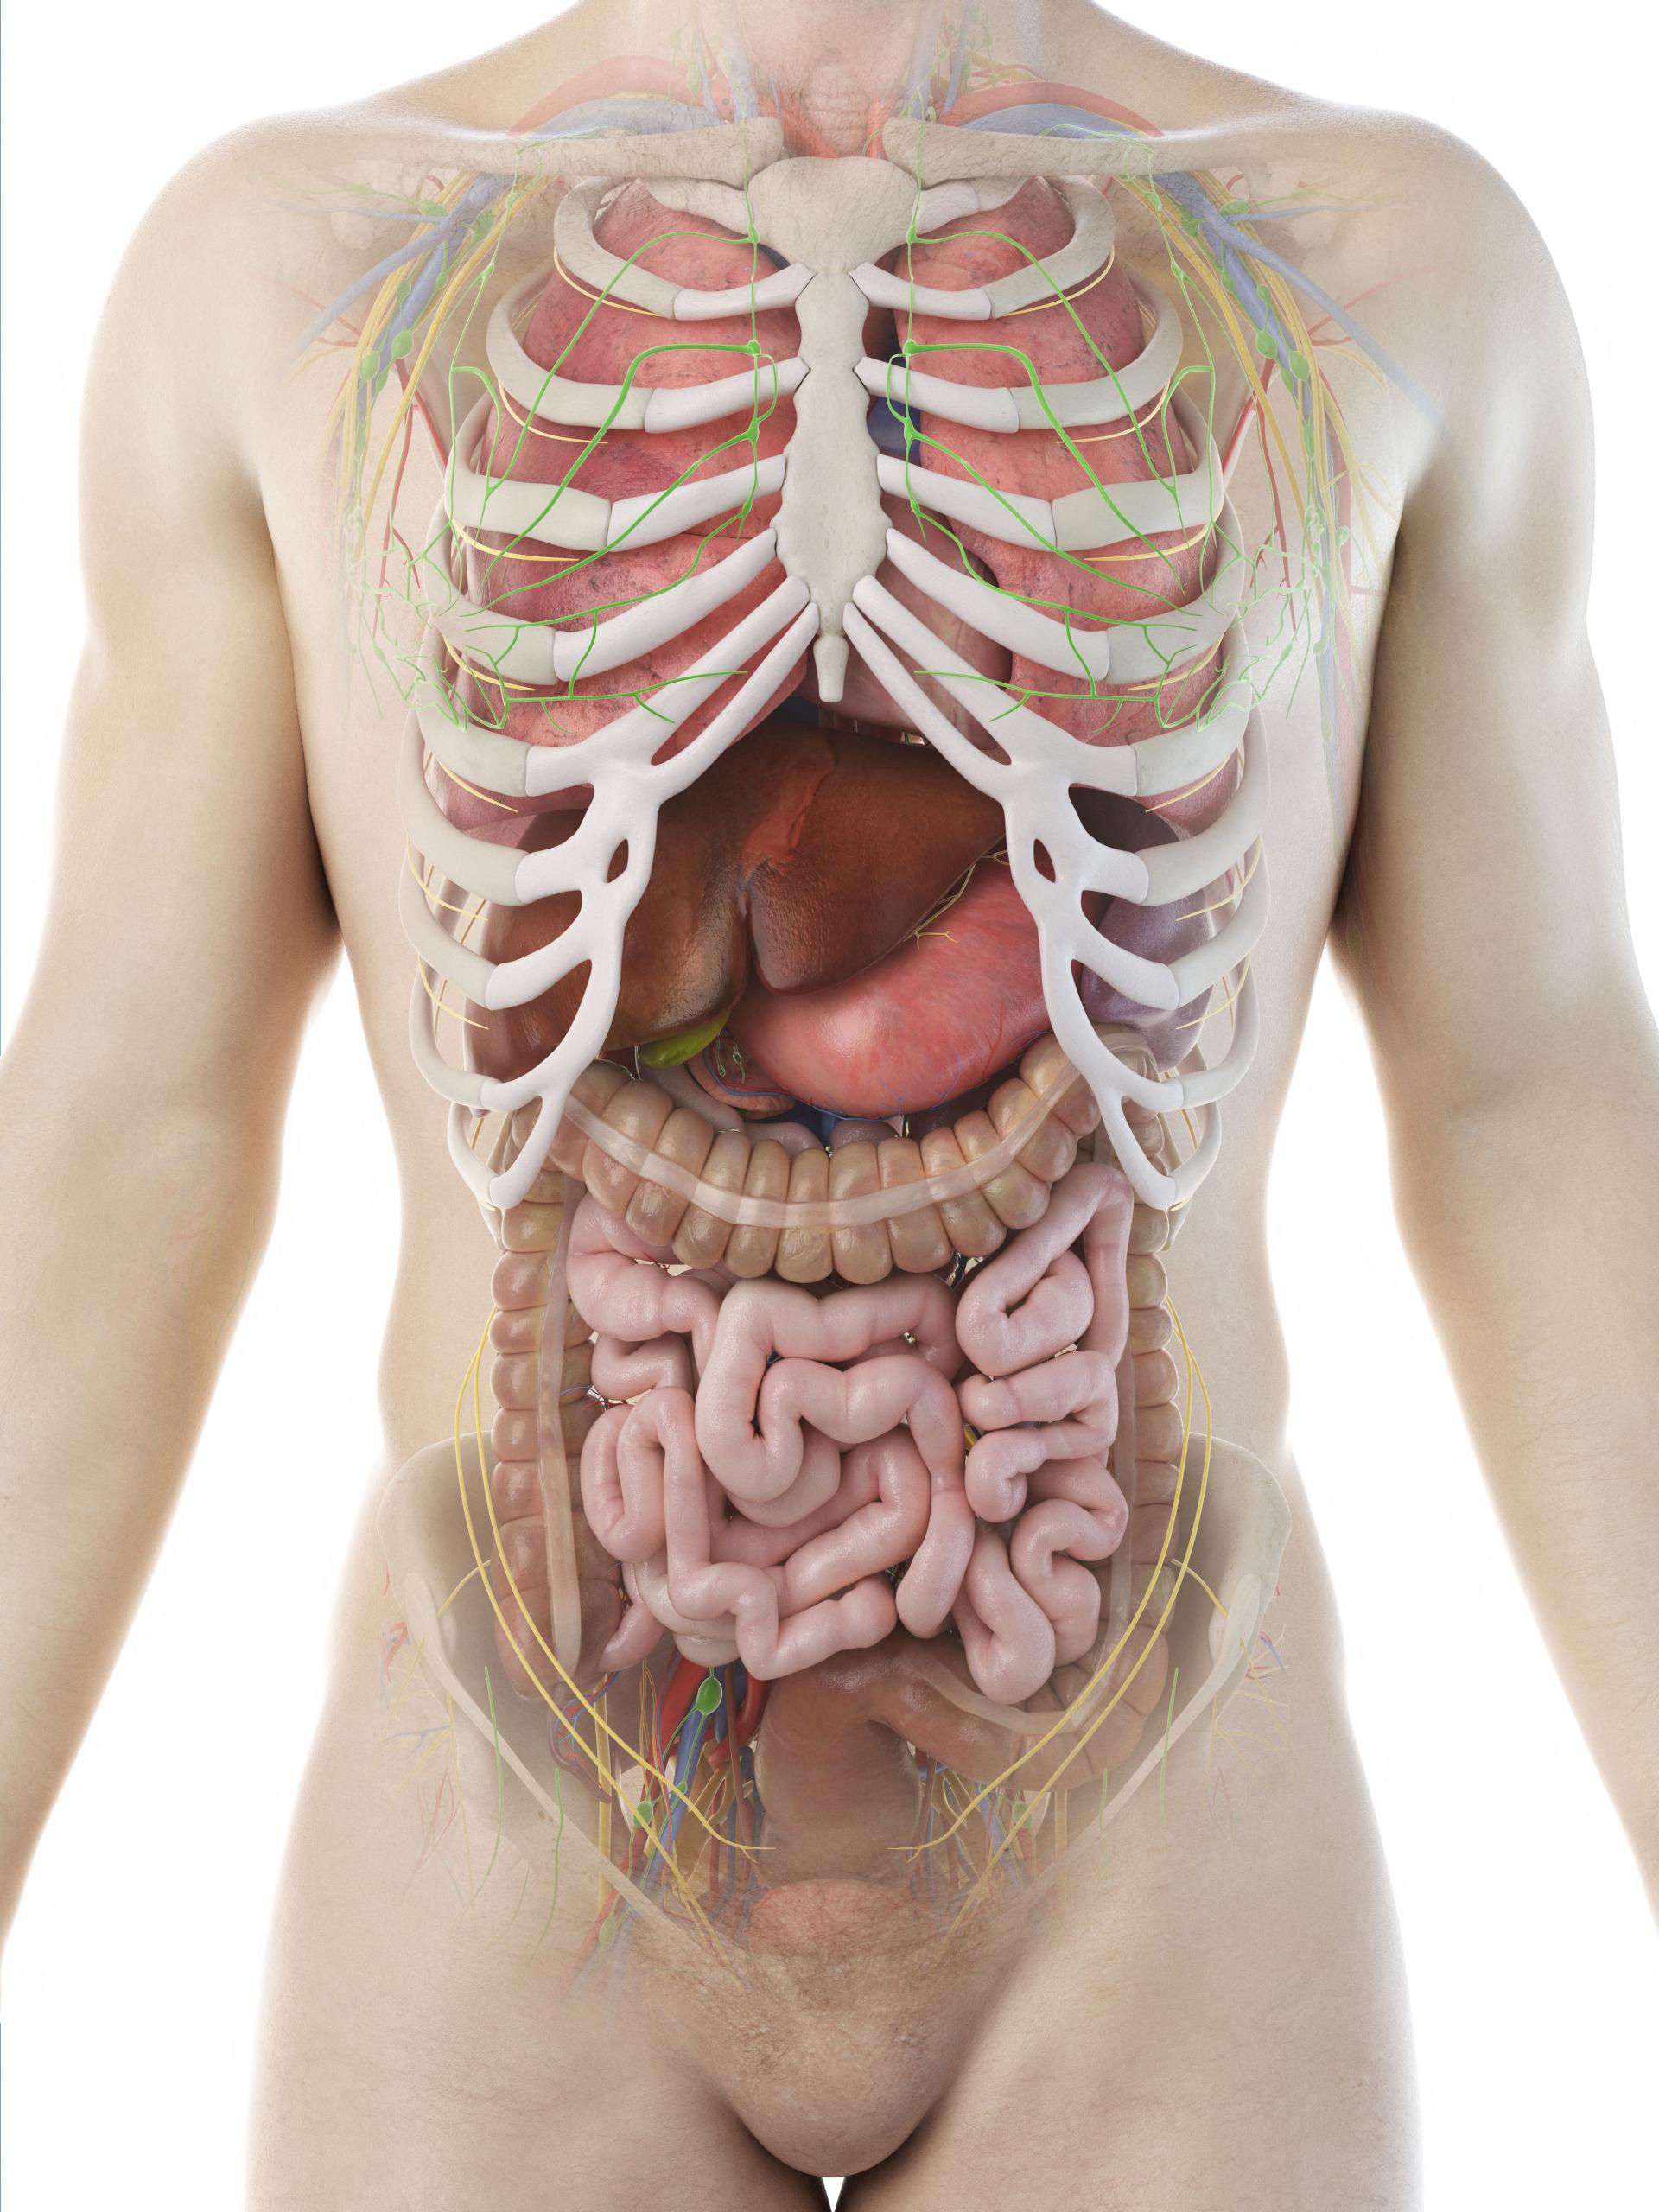 Фото как расположены органы у человека фото